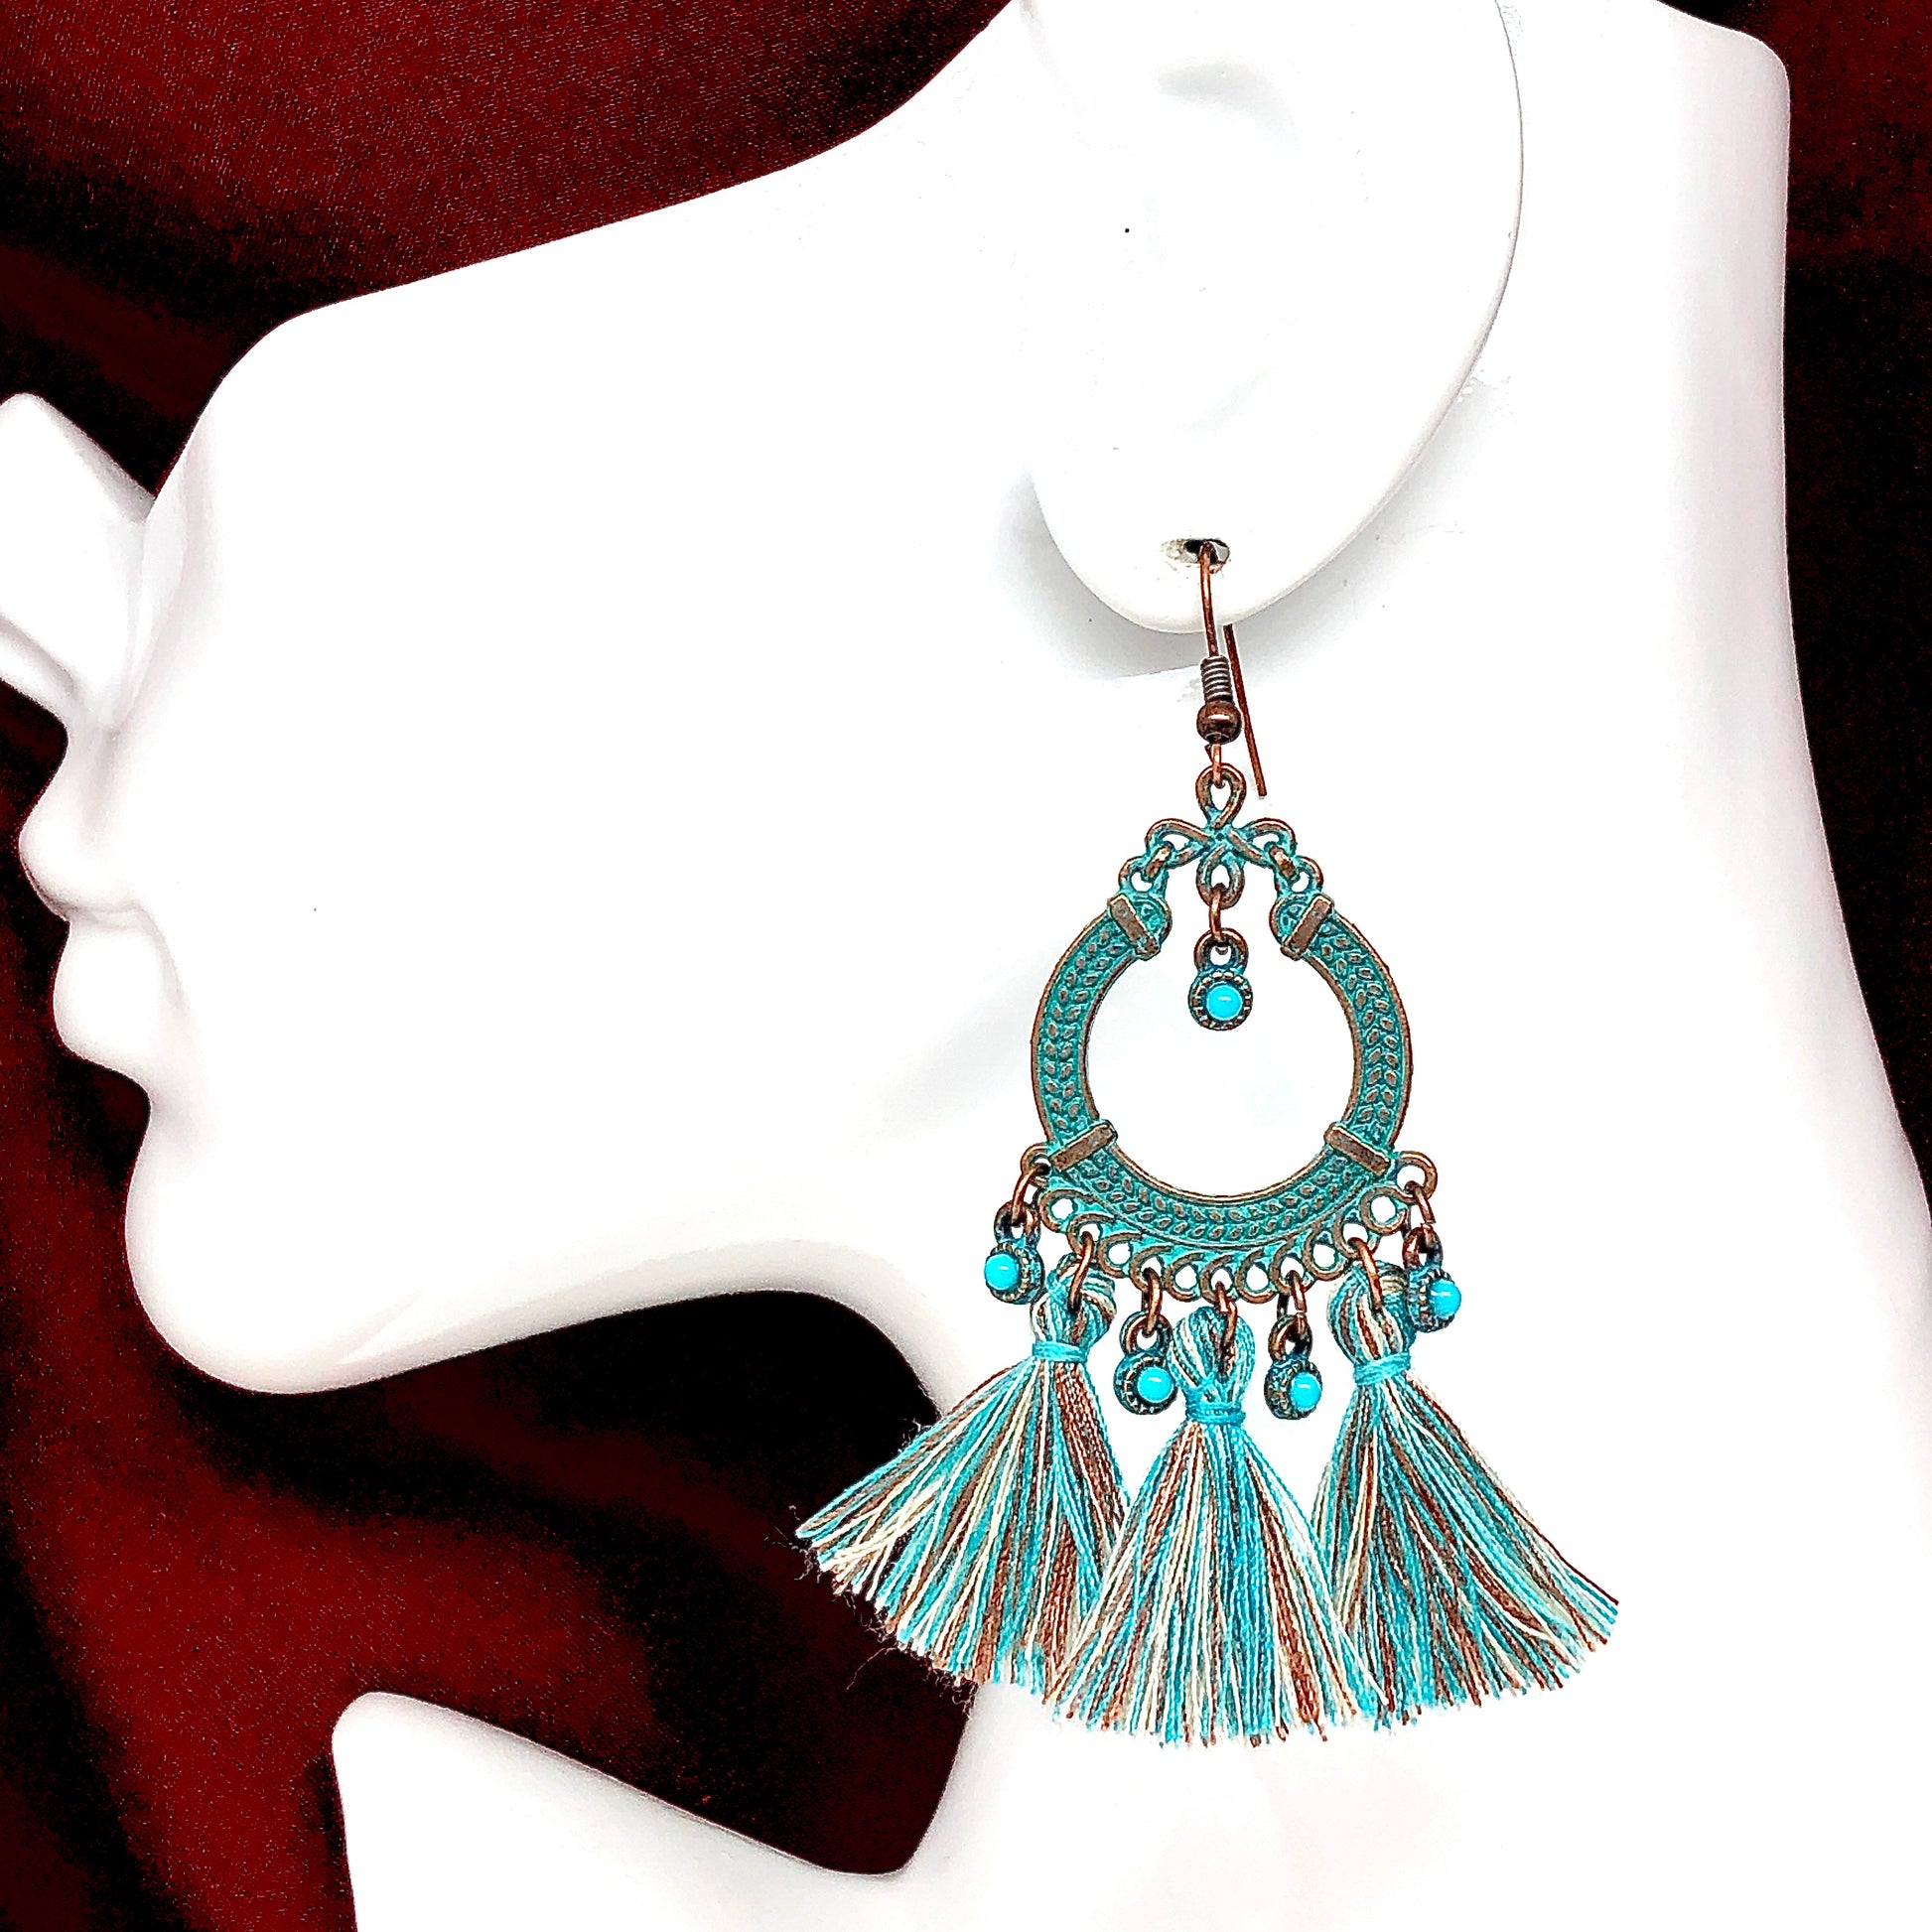 Tassel Earrings | Copper Verdigris Old World Celtic Wreath Tassel Earrings | Western and Boho Style Jewelry